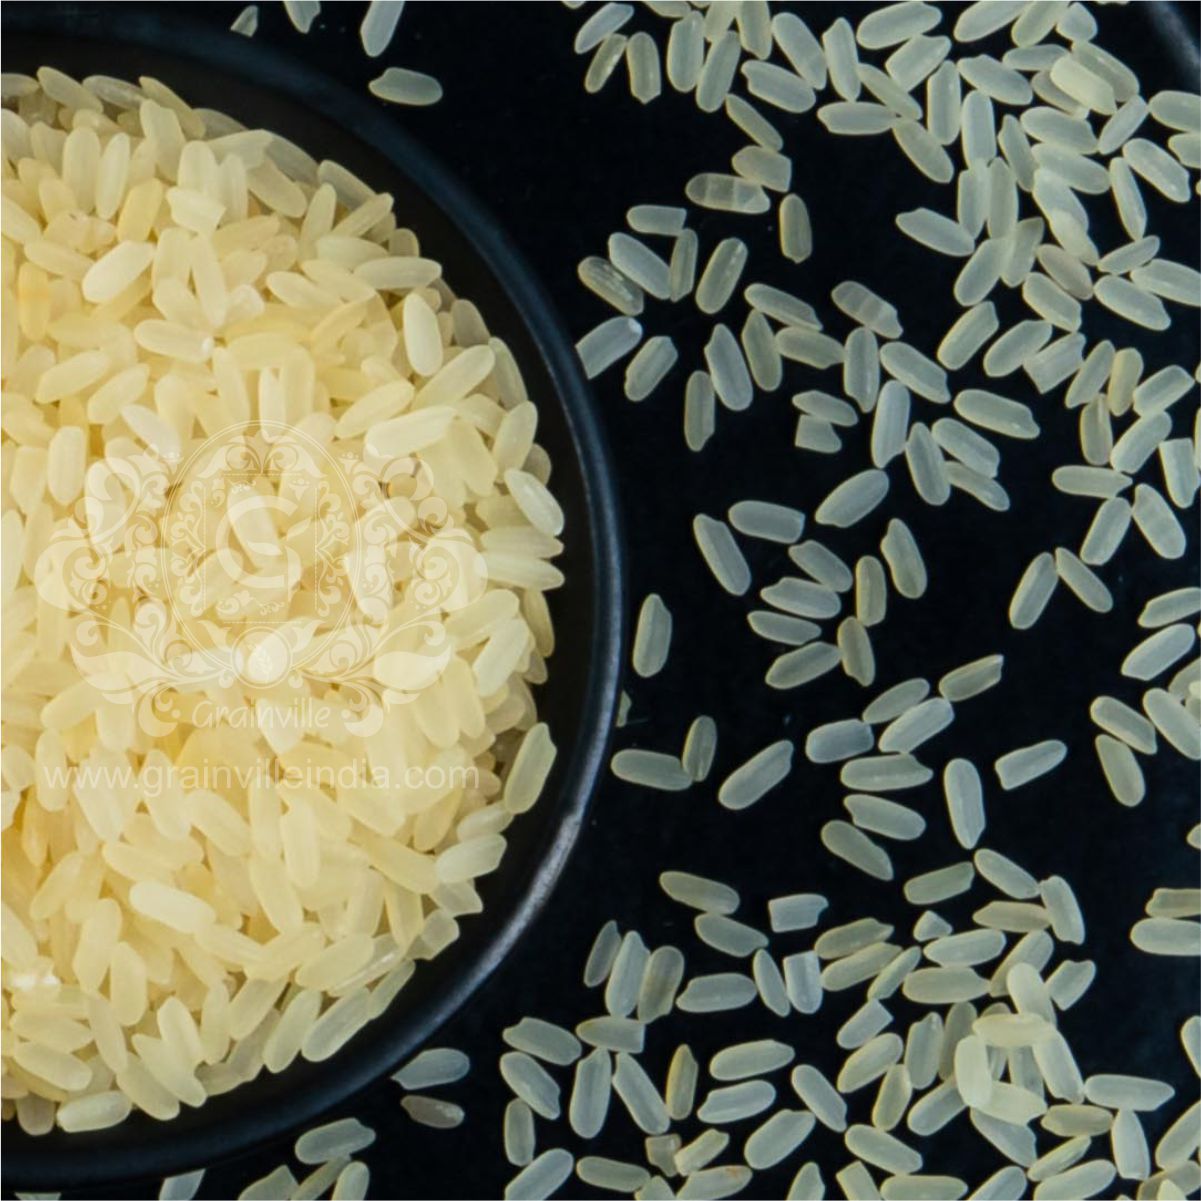 IR-8 Parboiled Rice 5% Broken in a black bowl